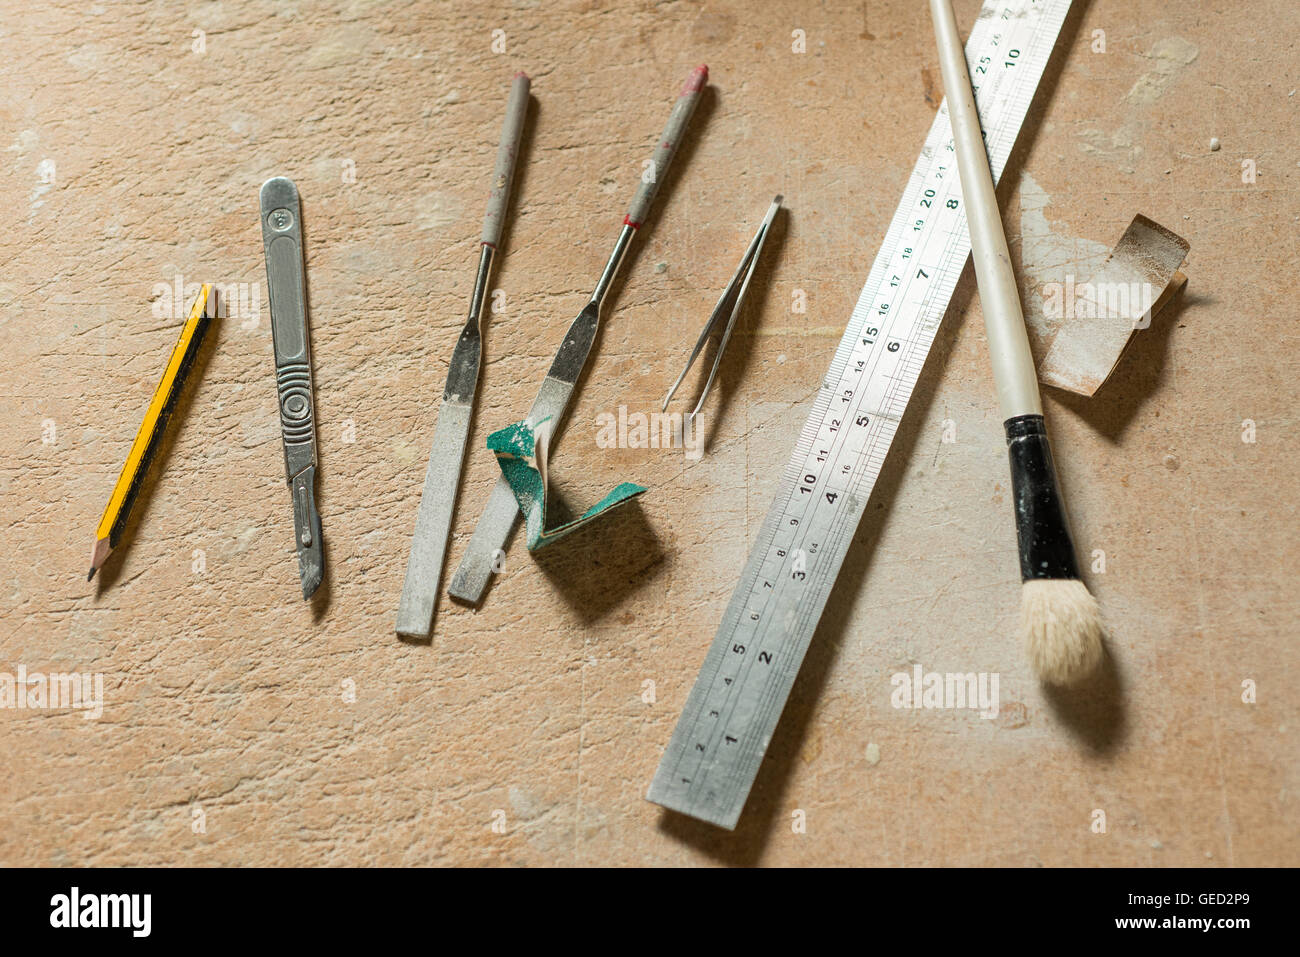 Un crayon, couteau de précision, une paire de fichiers, une paire de pinces, une règle métallique, pinceau, et utilisé des bandes de papier de verre sur un travail Banque D'Images